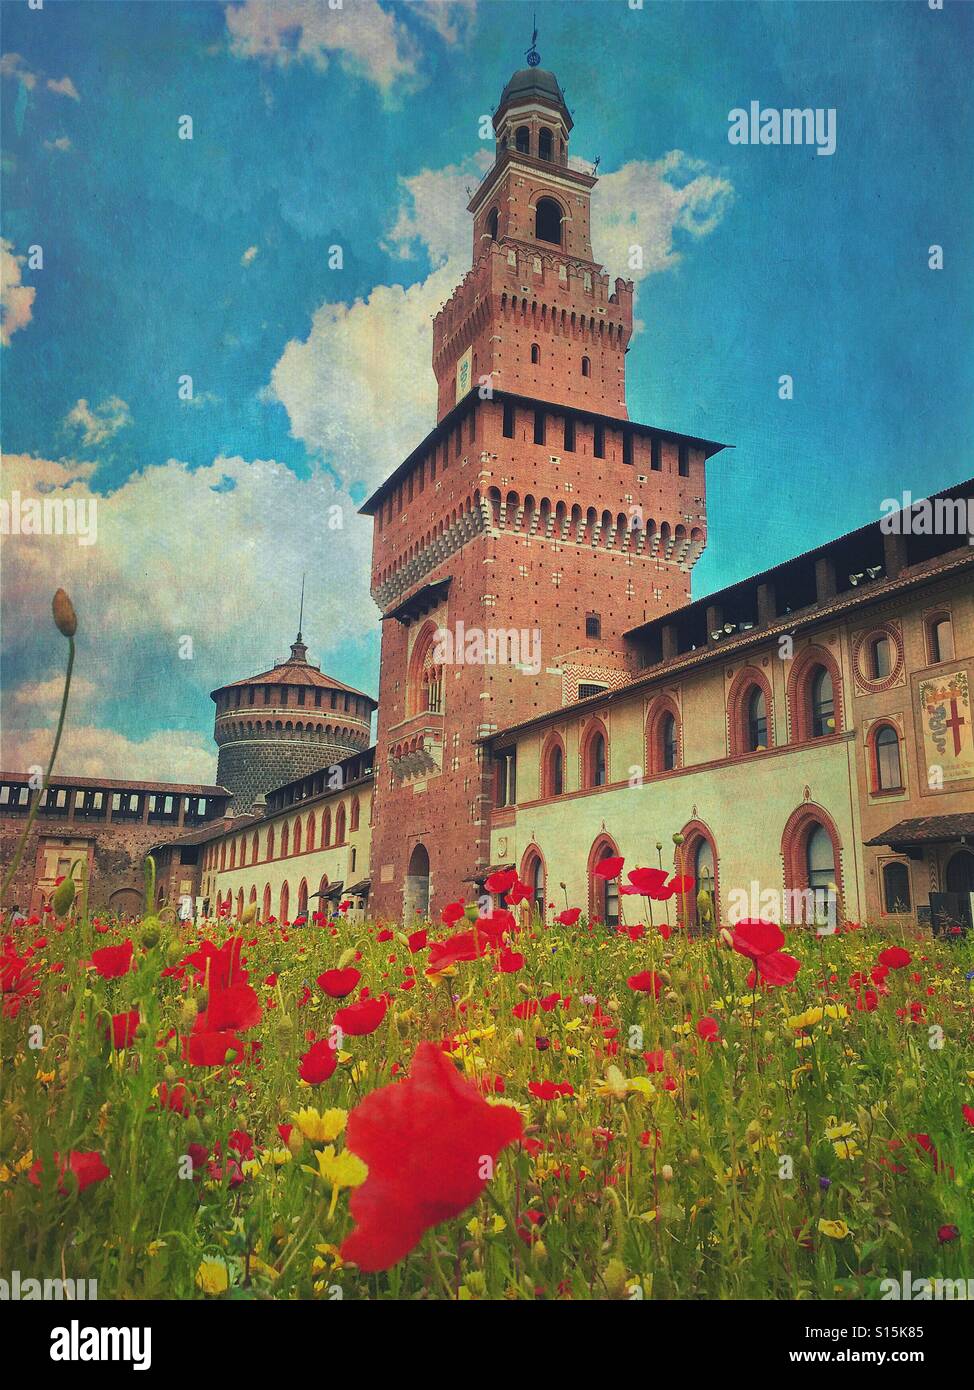 Blick auf das schöne Schloss Sforza in Mailand, Italien, mit roten Mohn Blumenfeld im Vordergrund. Vintage-Papier Textur-Overlay. Stockfoto